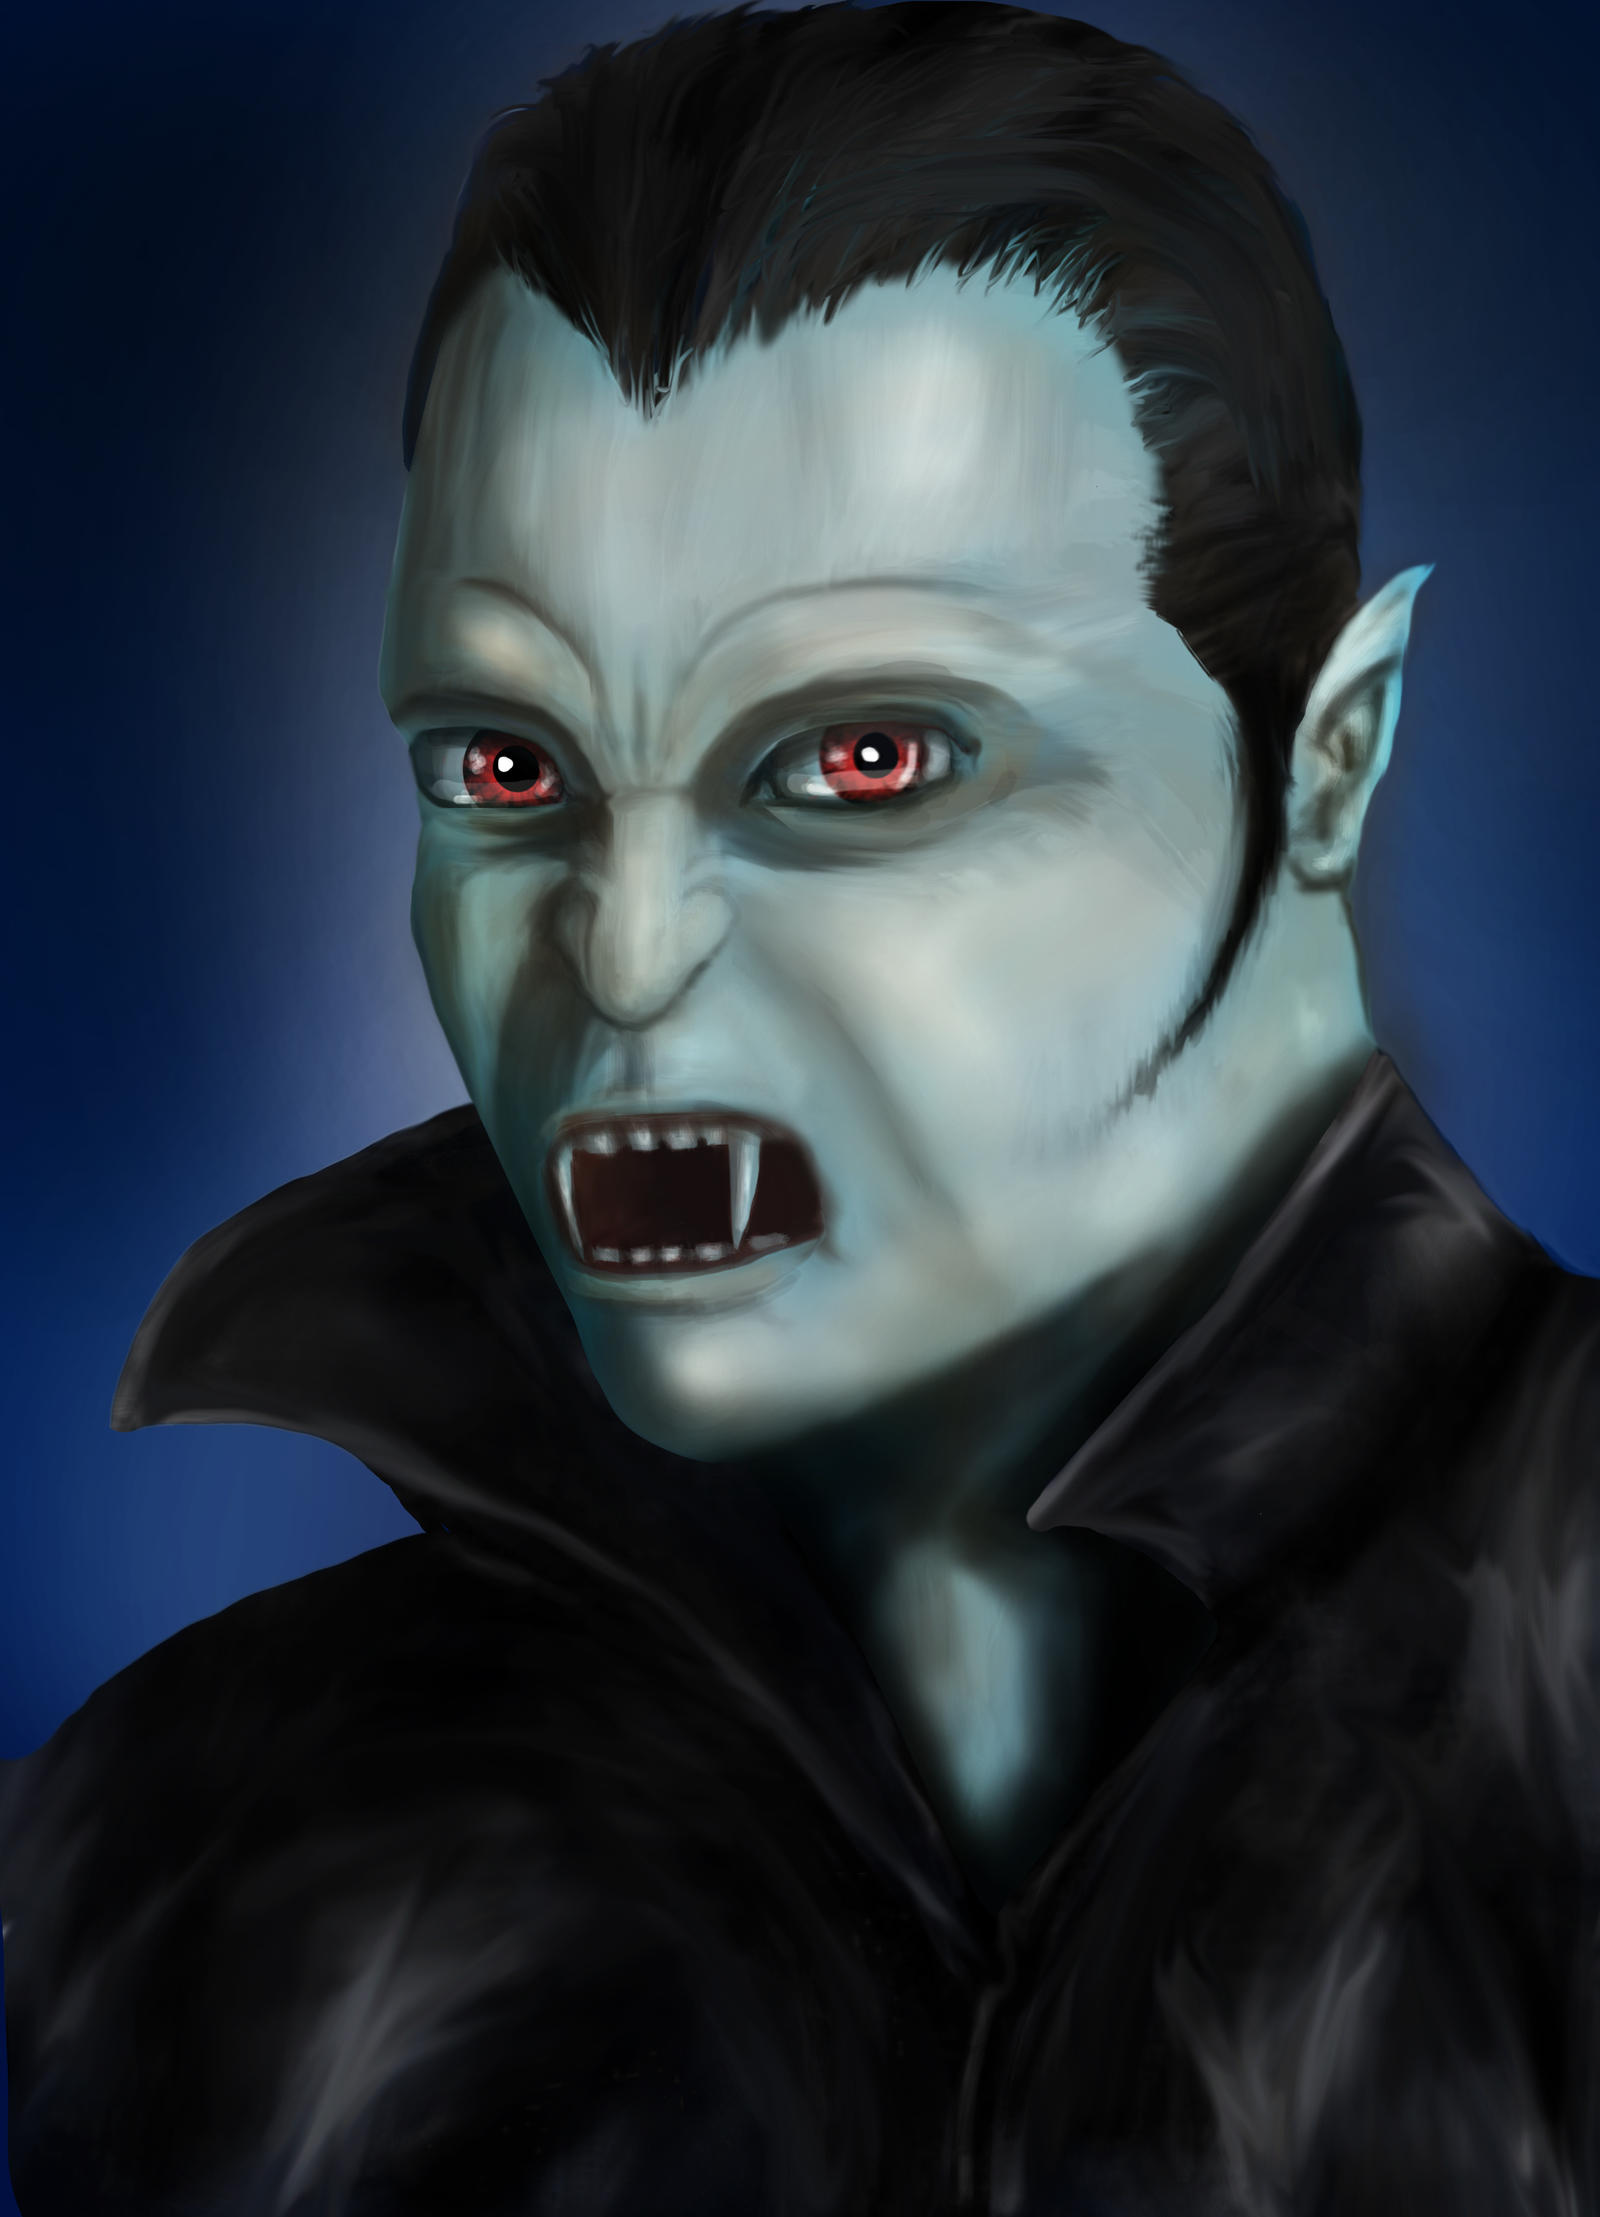 Dracula Portrait by CagedFreak on DeviantArt